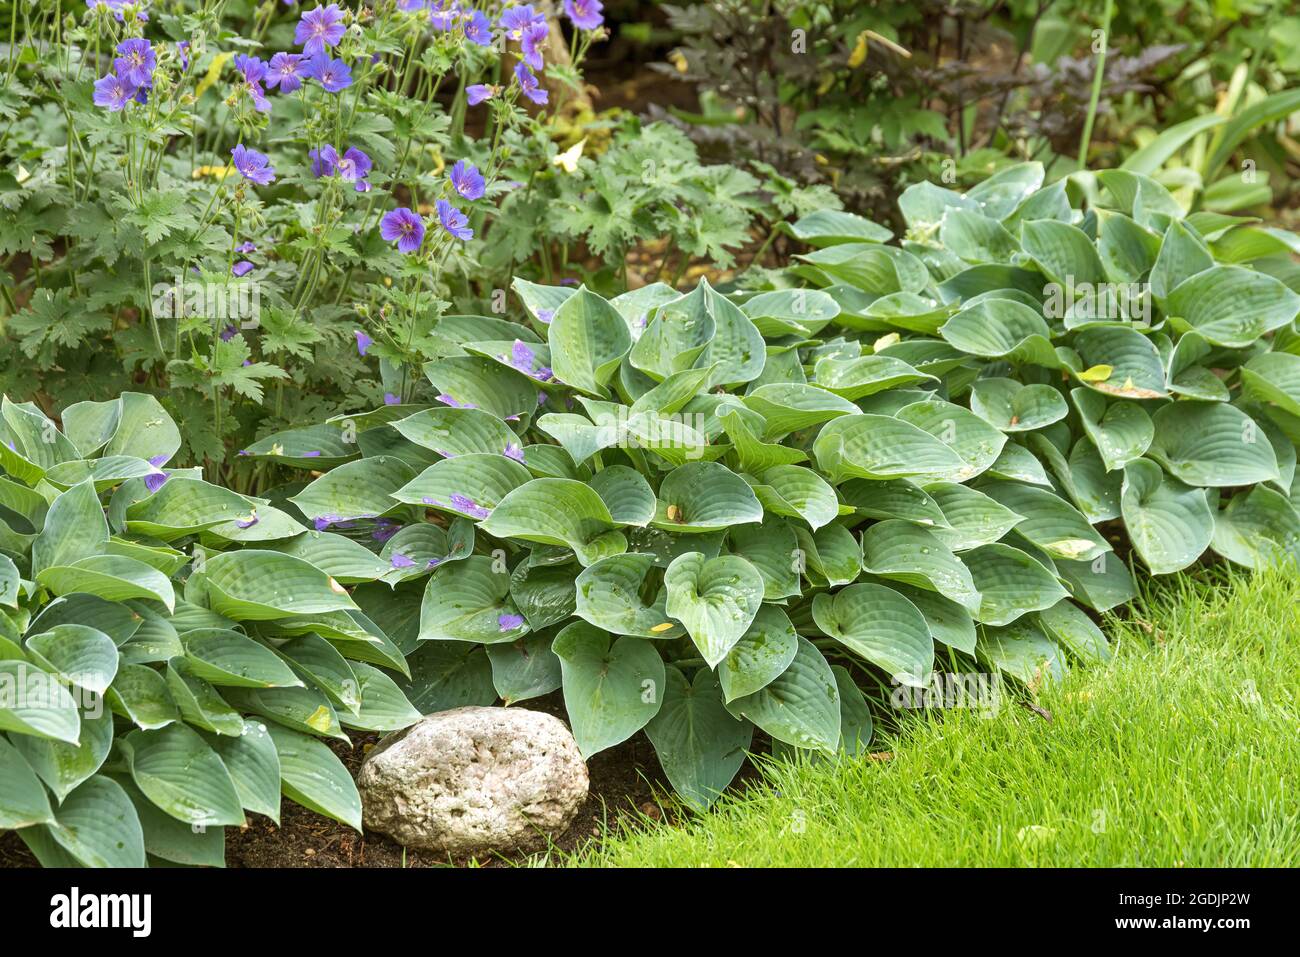 Plantain lily (Hosta 'Blue Cadet', Hosta Blue Cadet), cultivar Blue Cadet Stock Photo